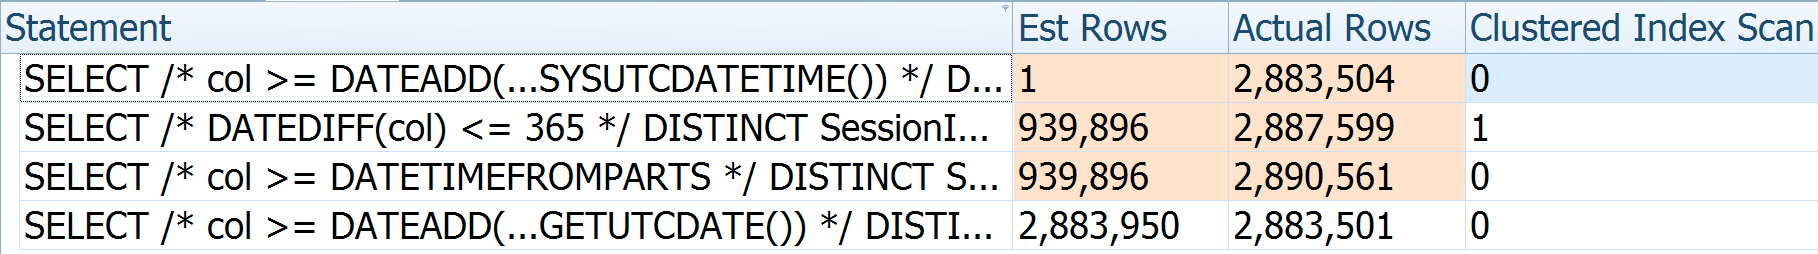 DATEADD/DATEDIFF estimates vs. actuals